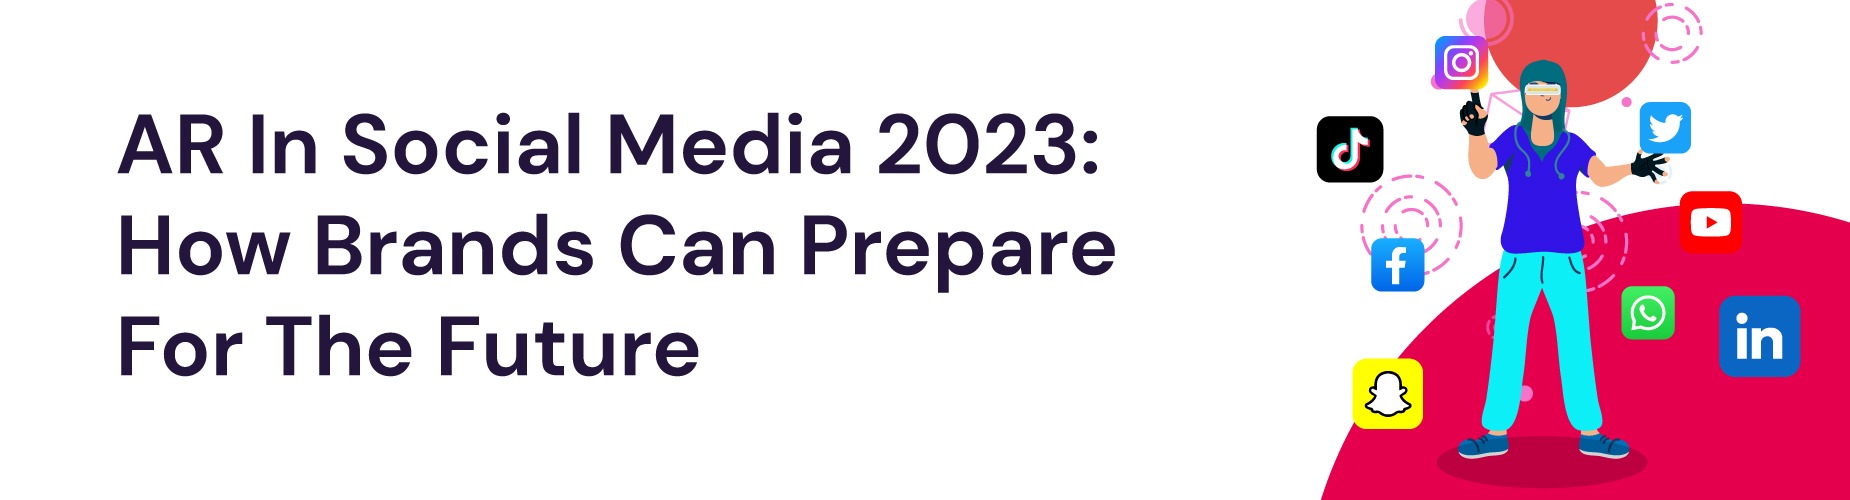 AR in social media 2023